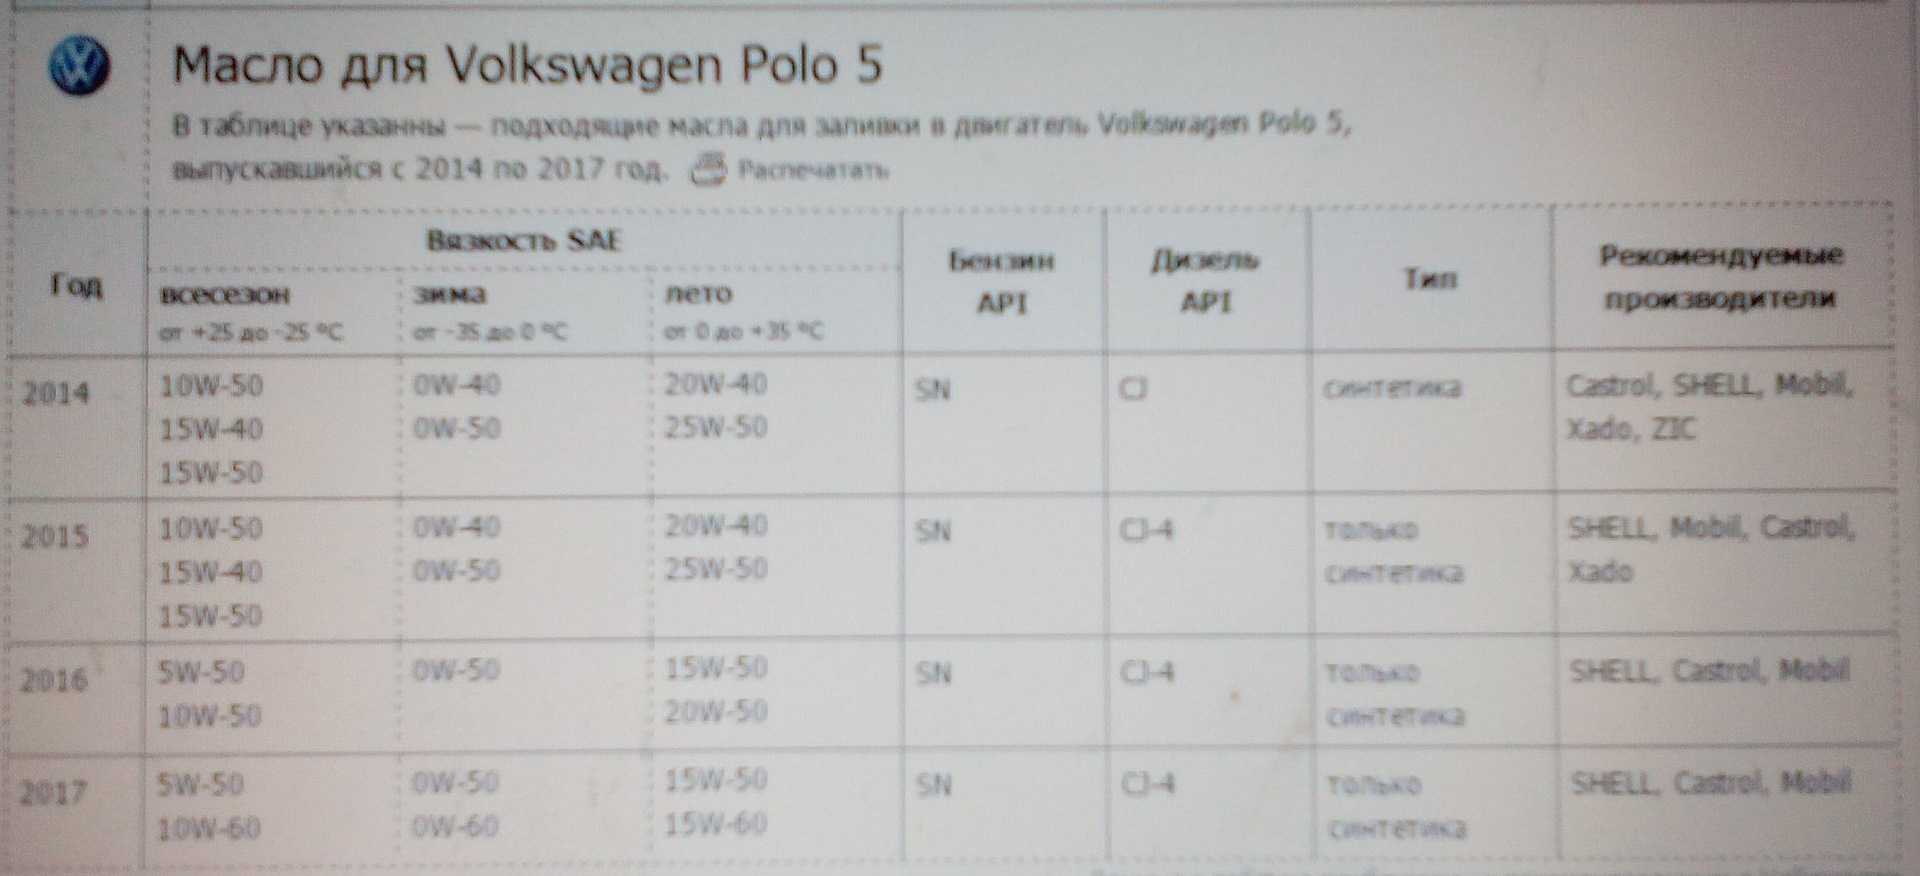 Фольксваген поло сколько литров масла. Объем масла Фольксваген поло 1.6. Polo sedan 1.6 допуск к маслу. Объем масла в двигателе Фольксваген поло 1.6 110. Масло VW Polo sedan 1.6 110.